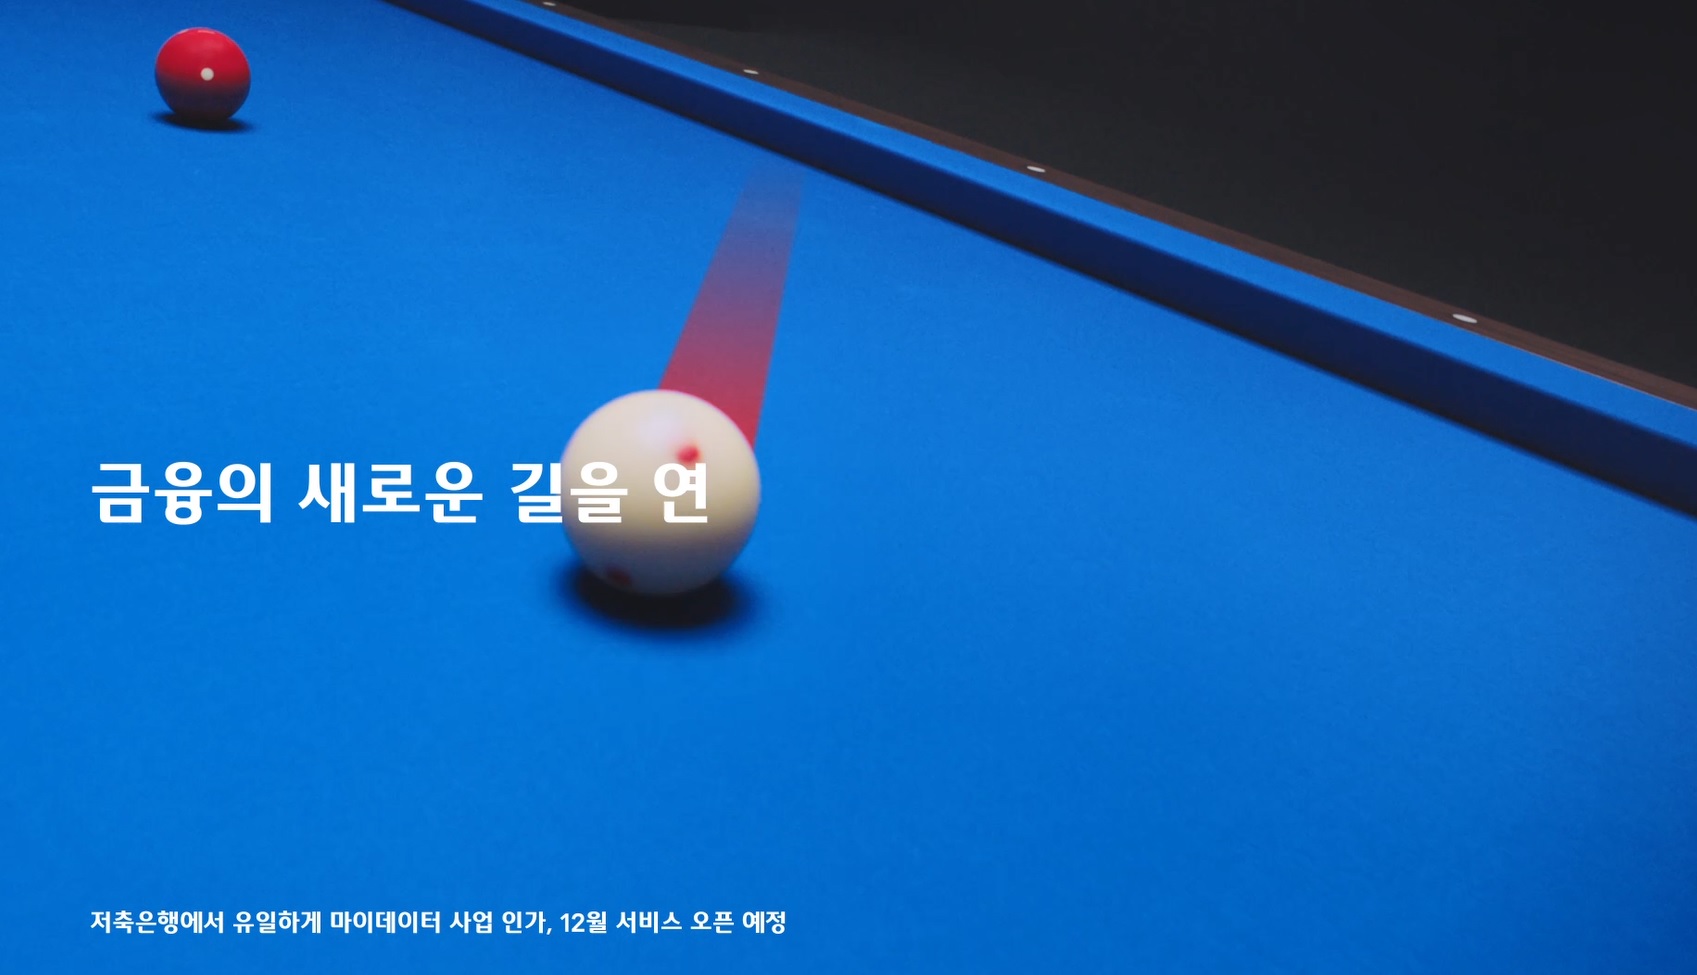 웰컴저축은행, 프로당구팀 웰뱅피닉스 선수 출연 새 TV광고 선보여